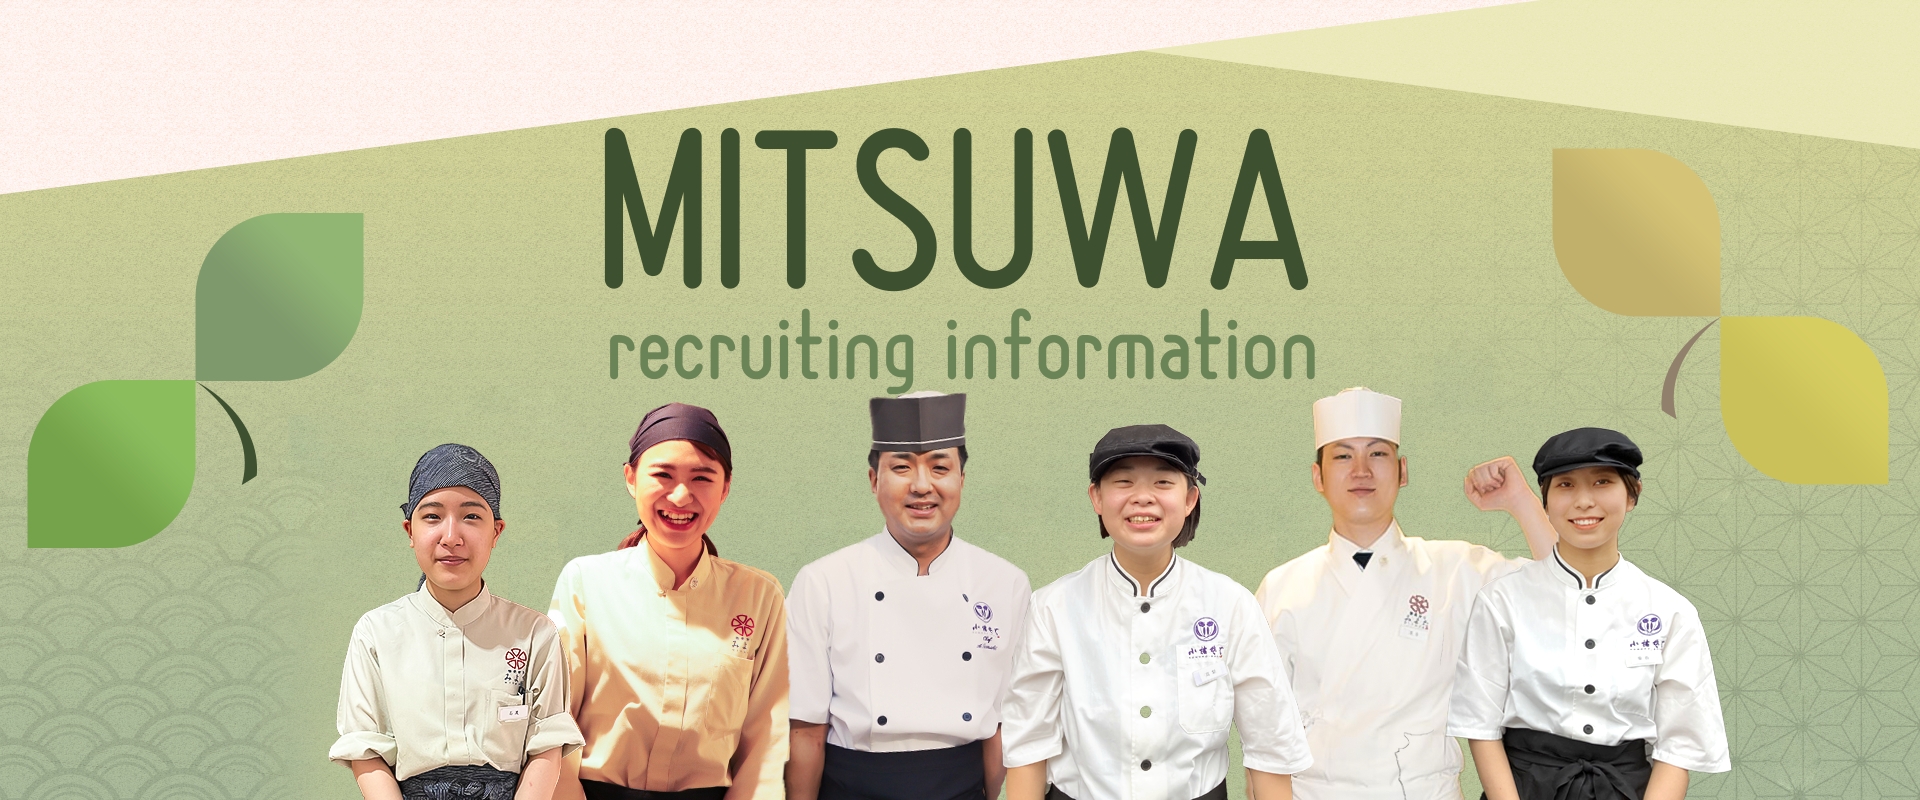 MITSUWA Recruiting Information